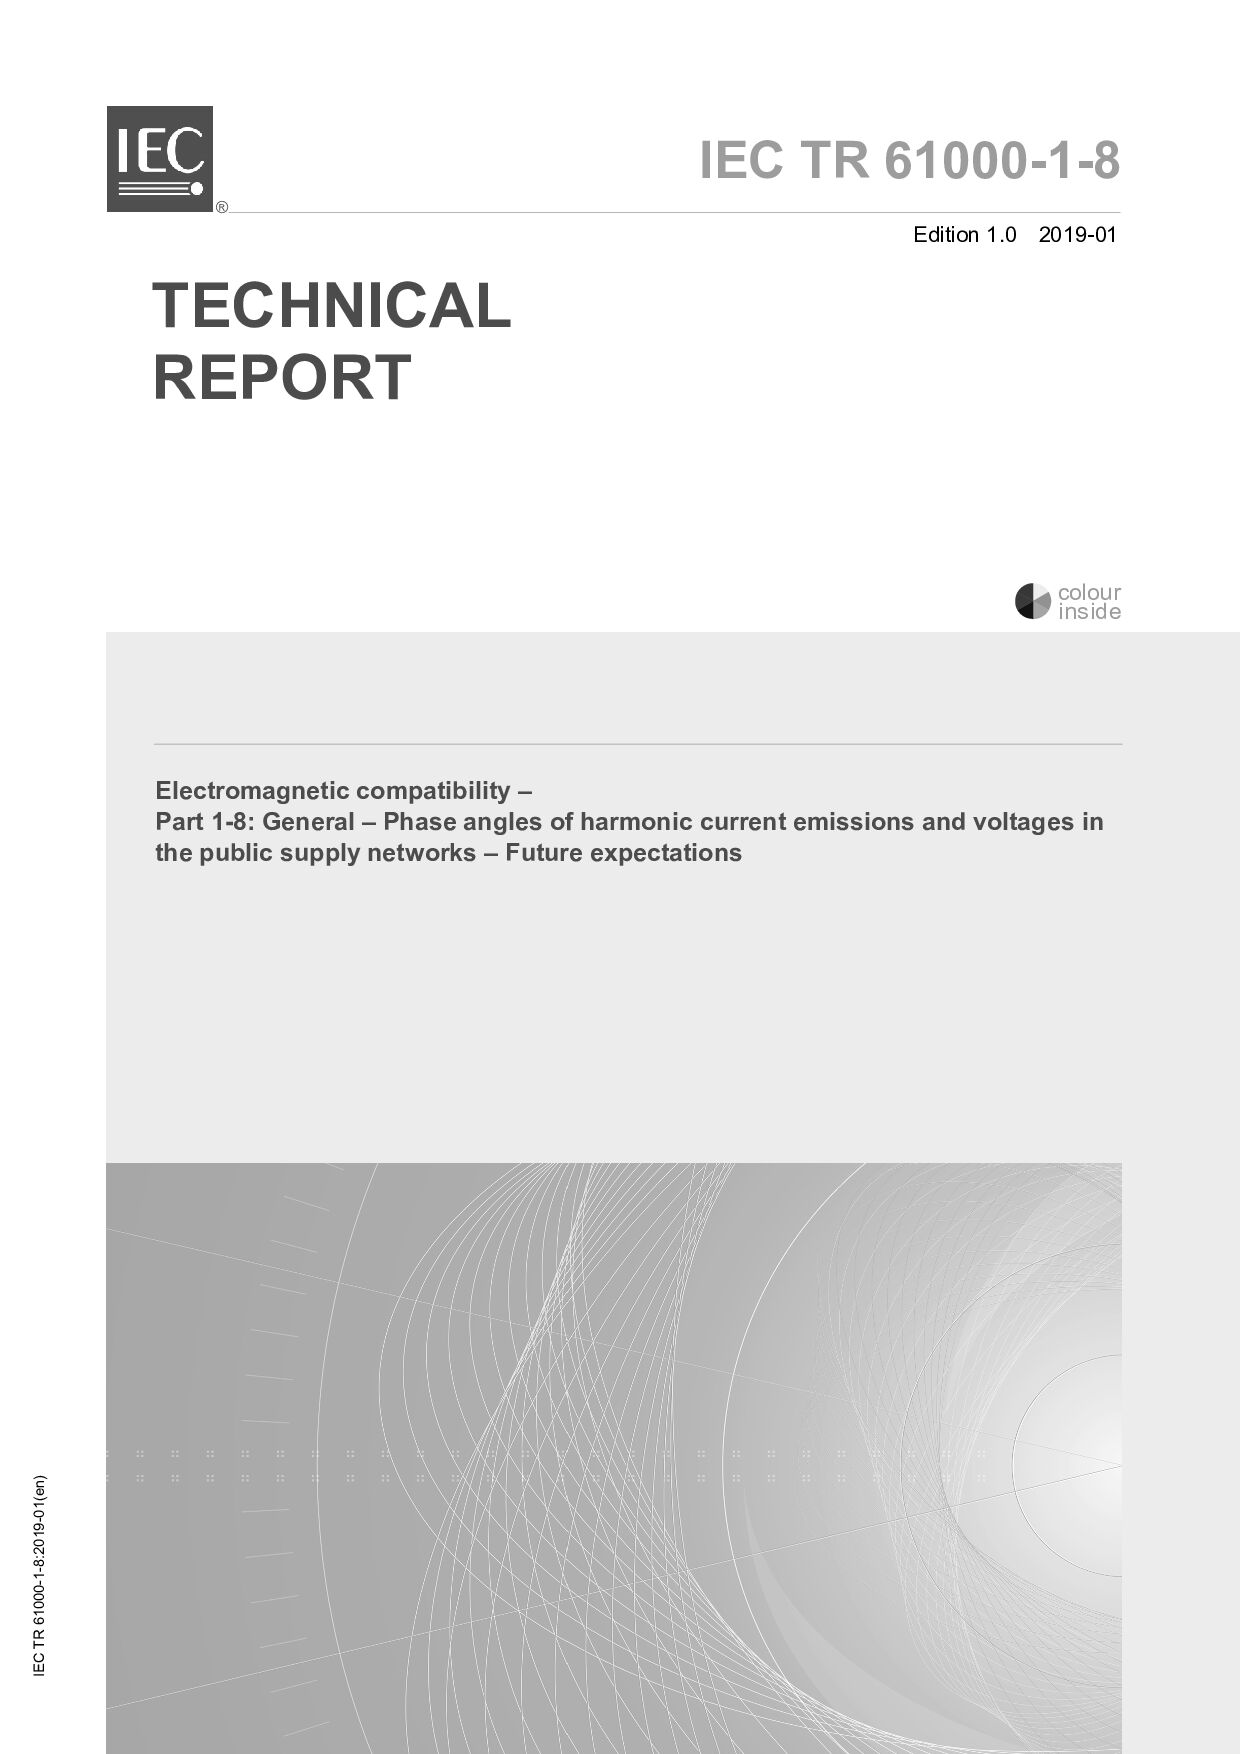 IEC TR 61000-1-8:2019